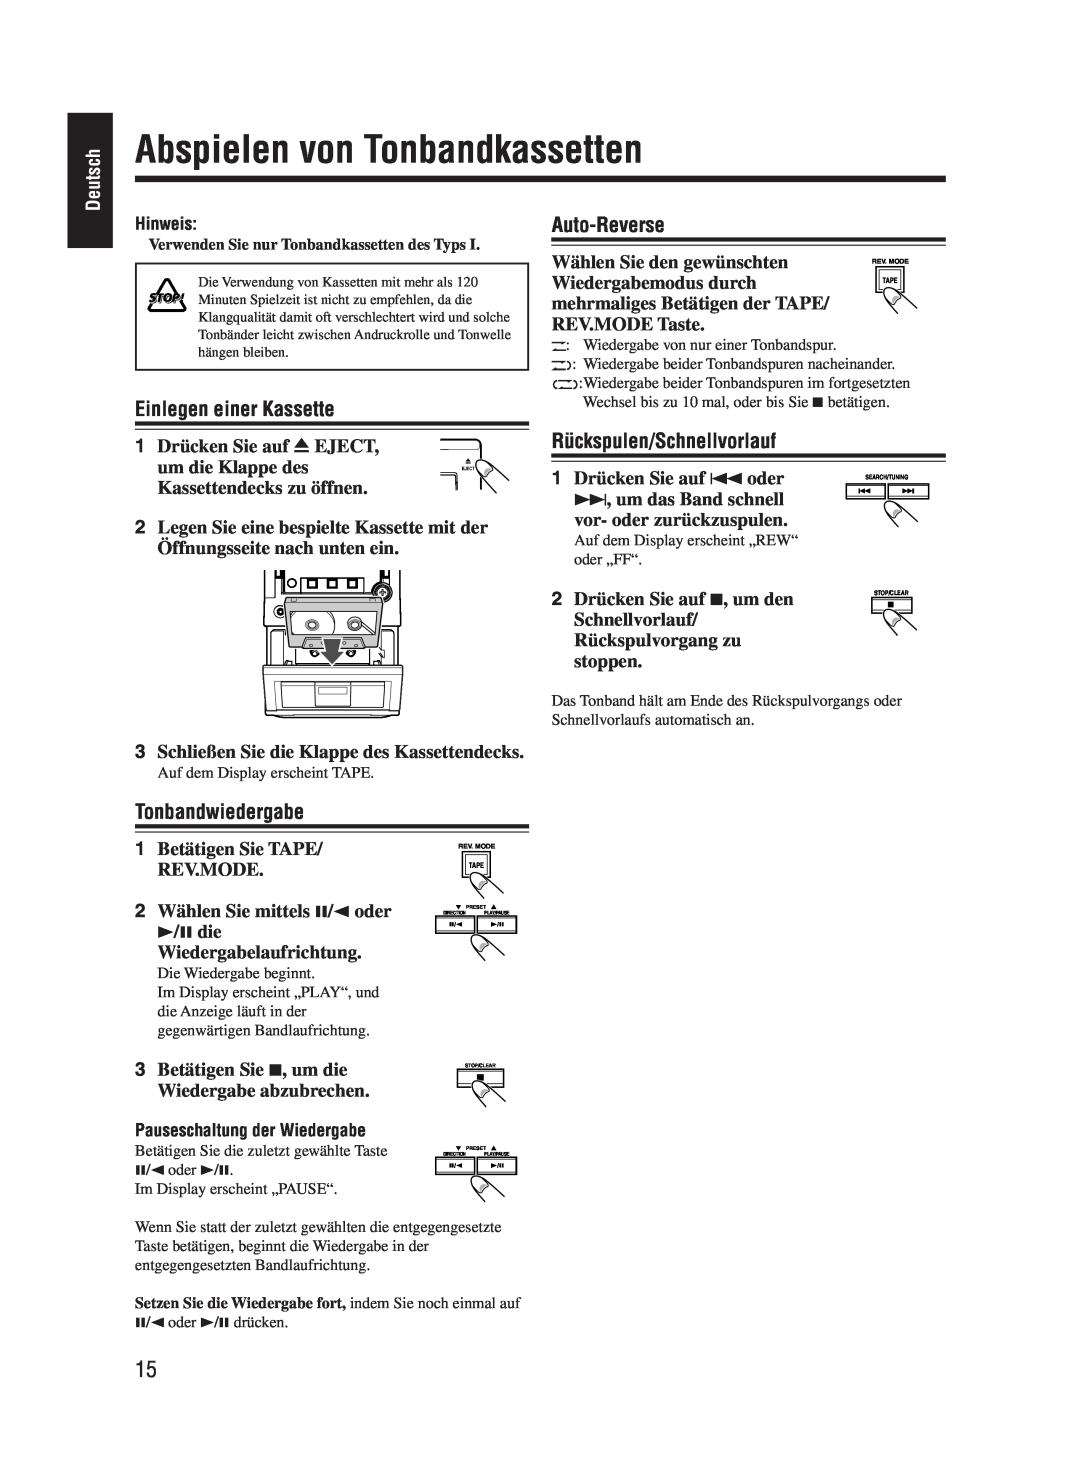 JVC UX-M55 manual Abspielen von Tonbandkassetten, Einlegen einer Kassette, Auto-Reverse, Rückspulen/Schnellvorlauf, Deutsch 